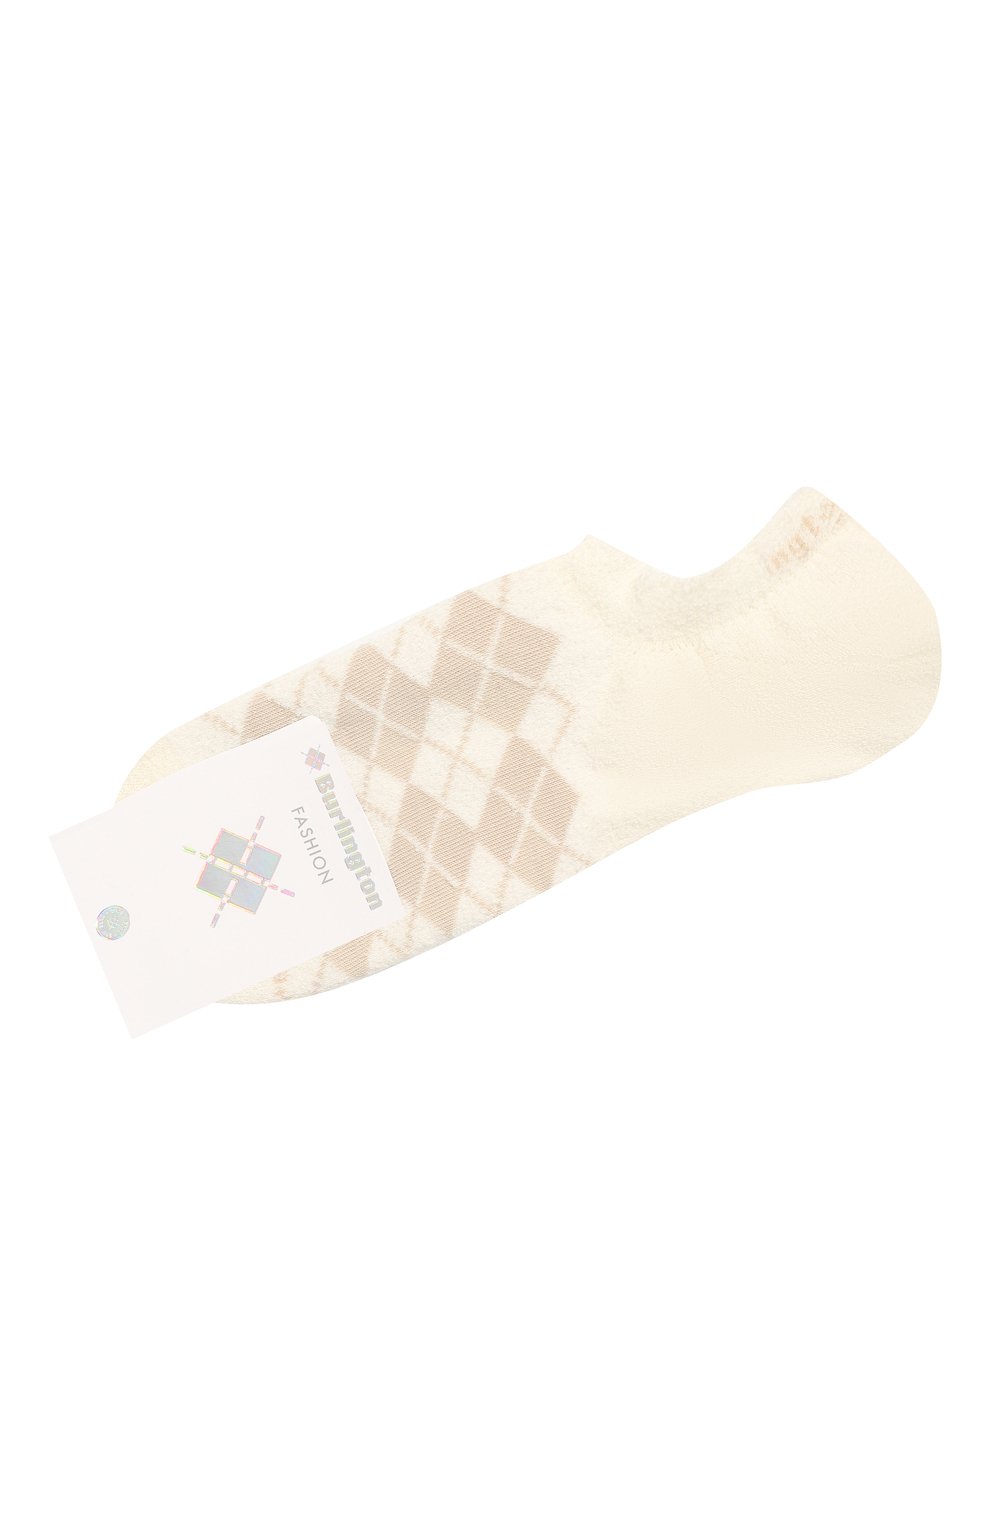 Мужские хлопковые носки BURLINGTON кремвого цвета, арт. 21981. | Фото 1 (Кросс-КТ: бельё; Материал внешний: Синтетический материал, Хлопок)